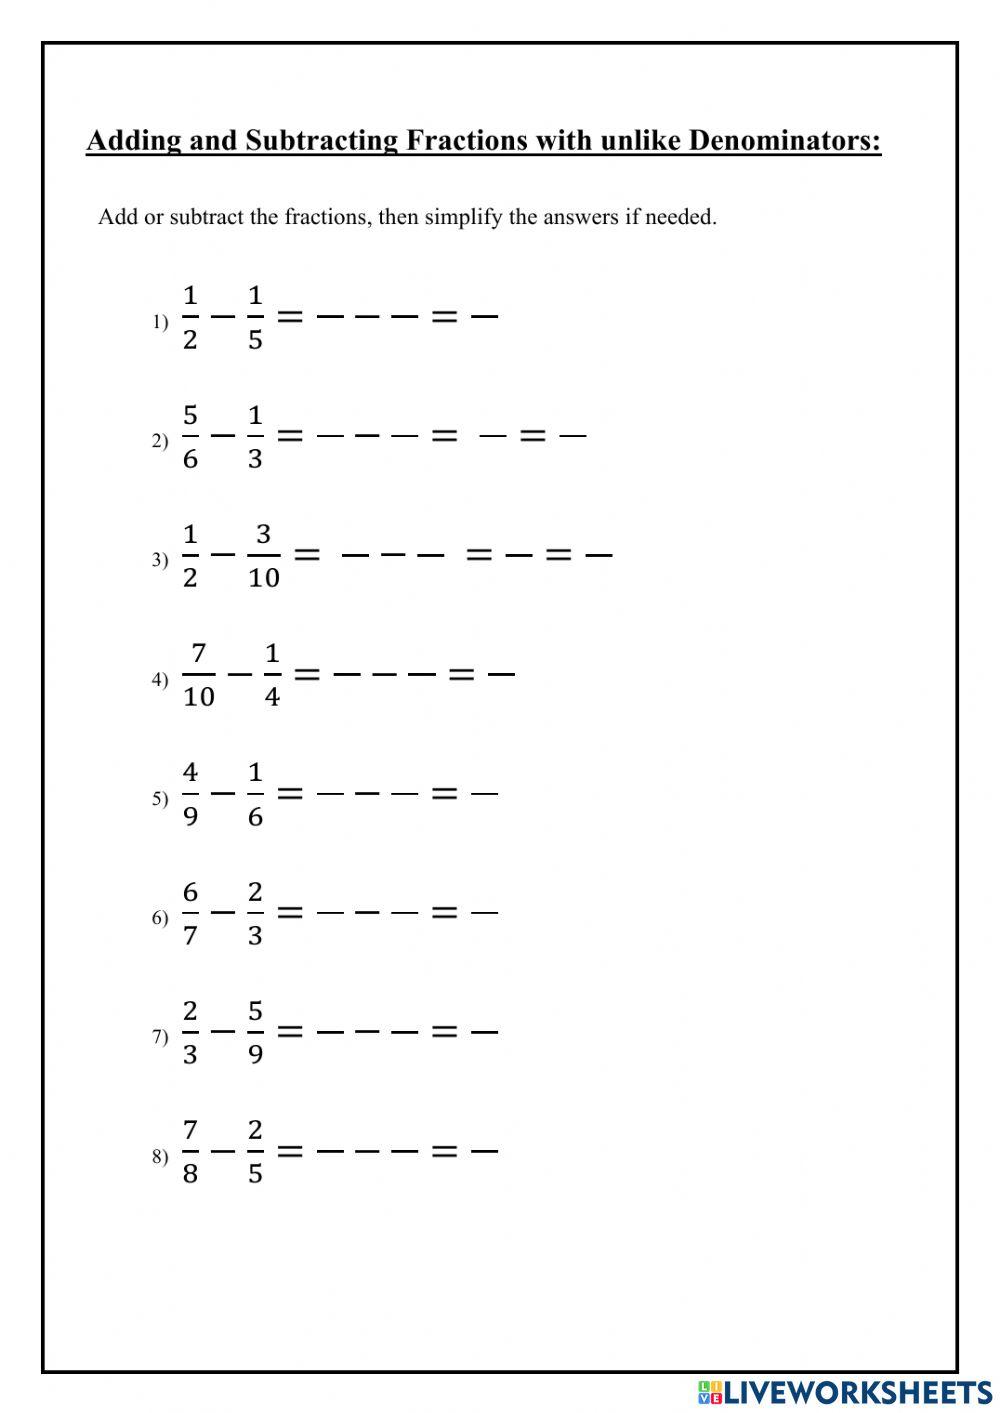 Subtracting fractions with unlike denominators